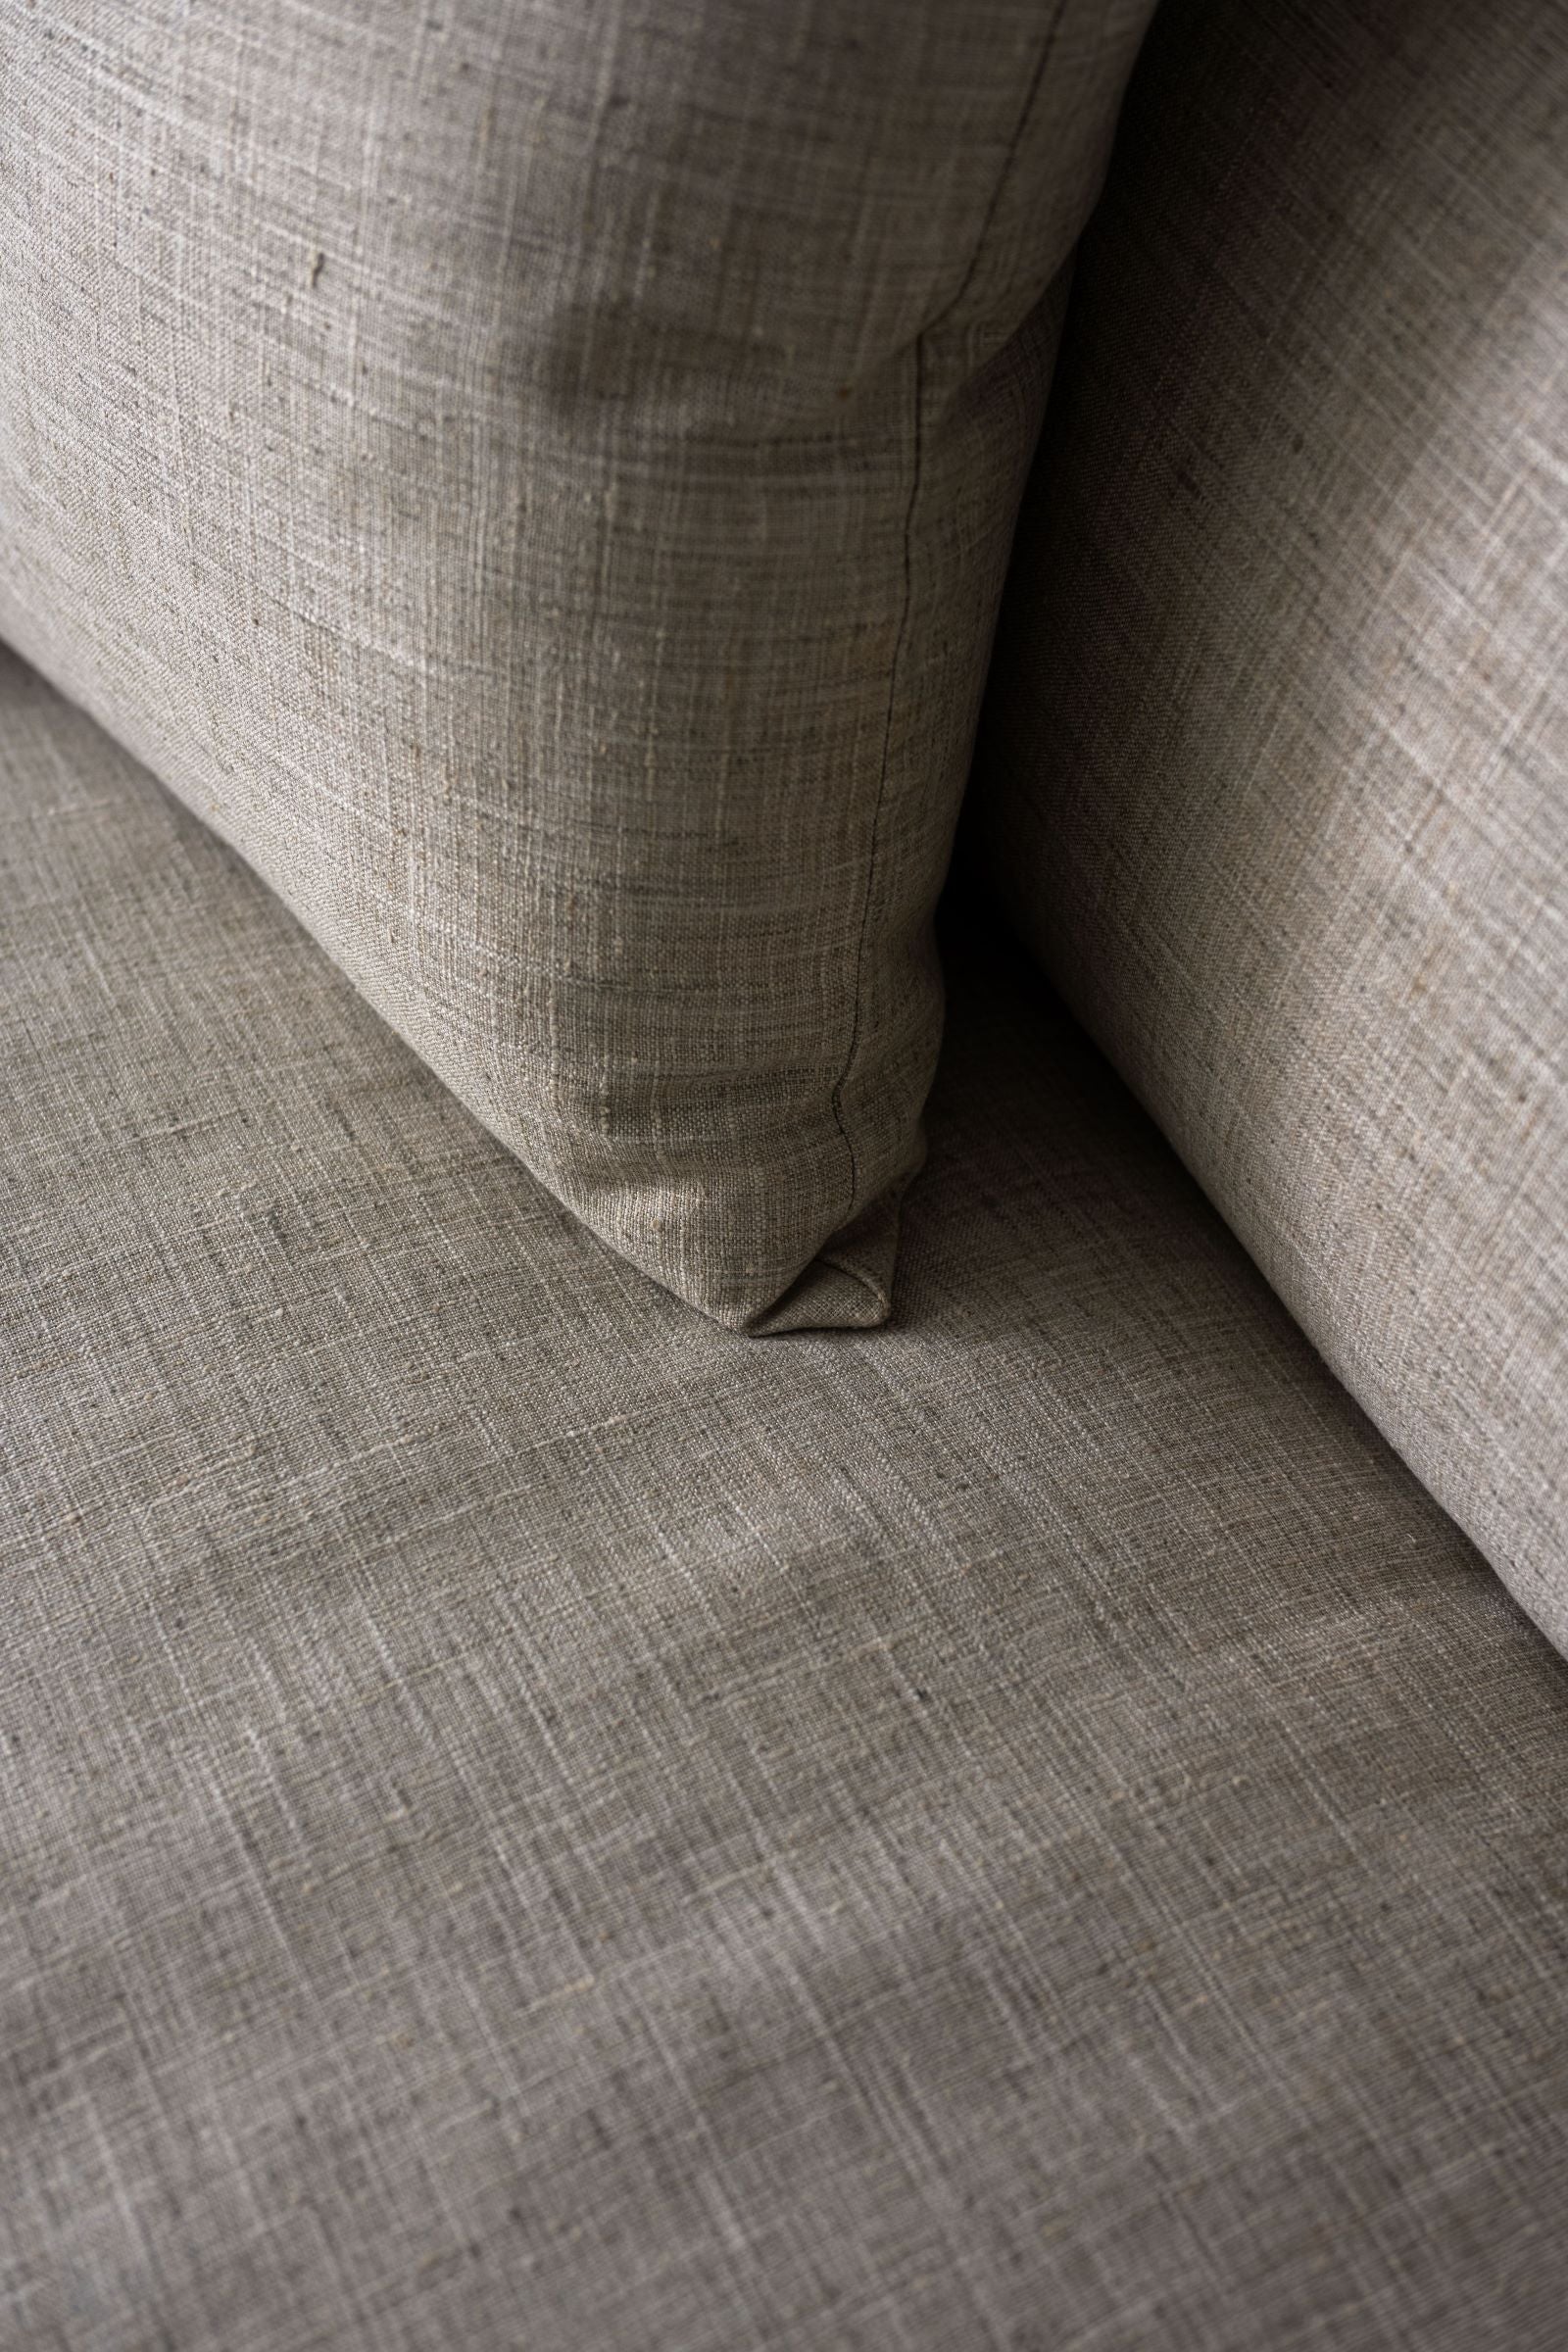 Linen Skirted Sofa